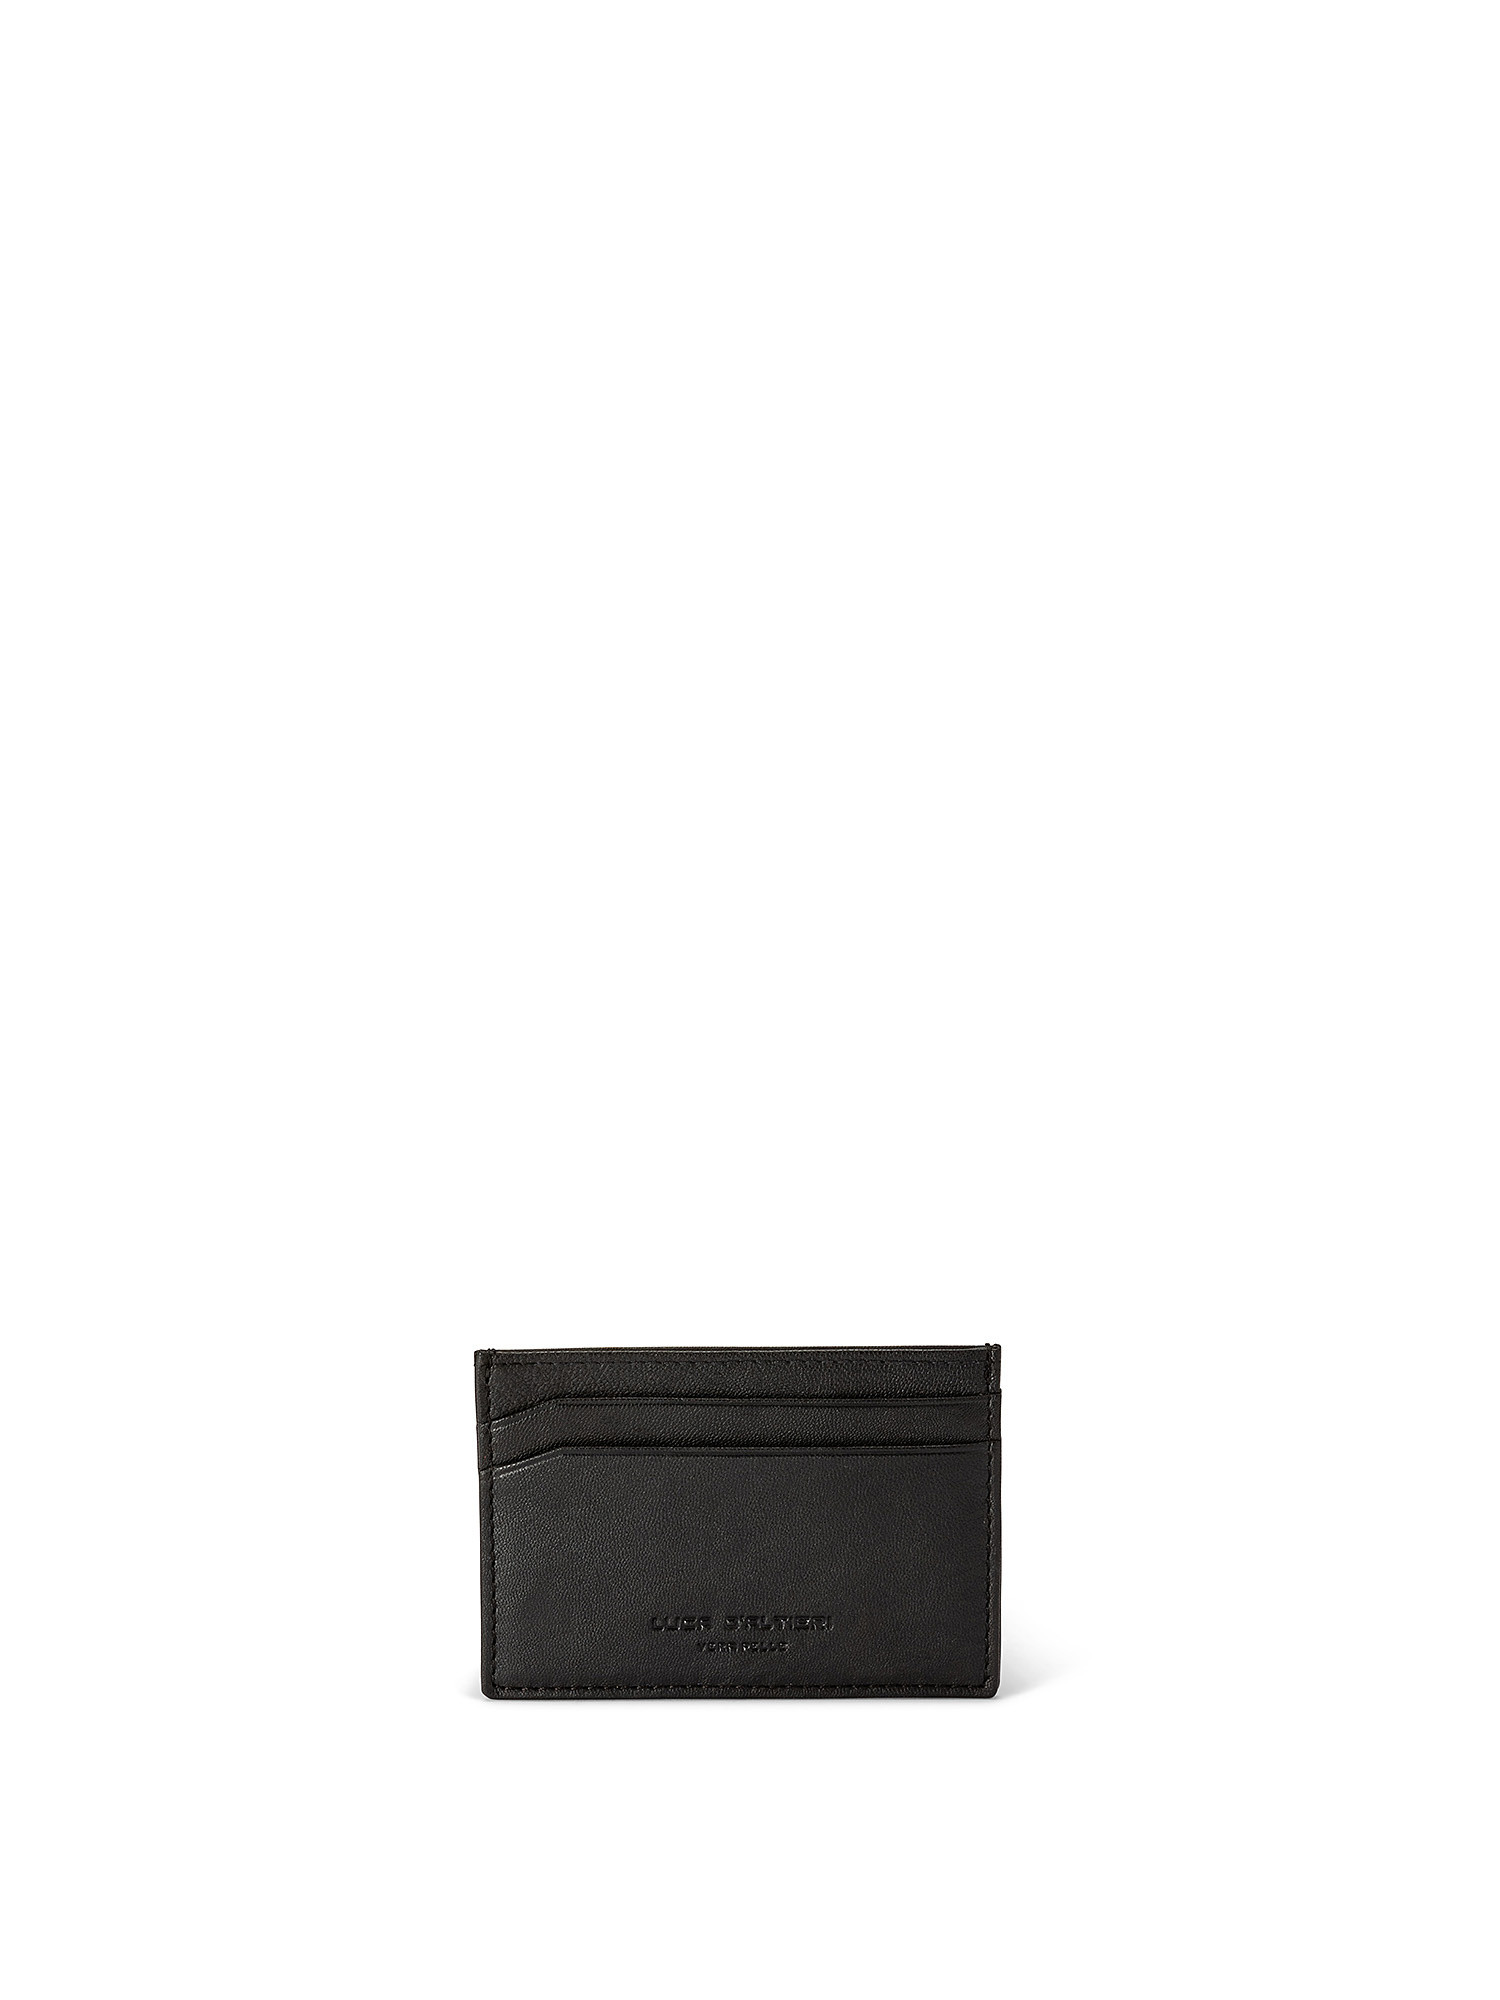 Solid color genuine leather credit card holder, Black, large image number 0